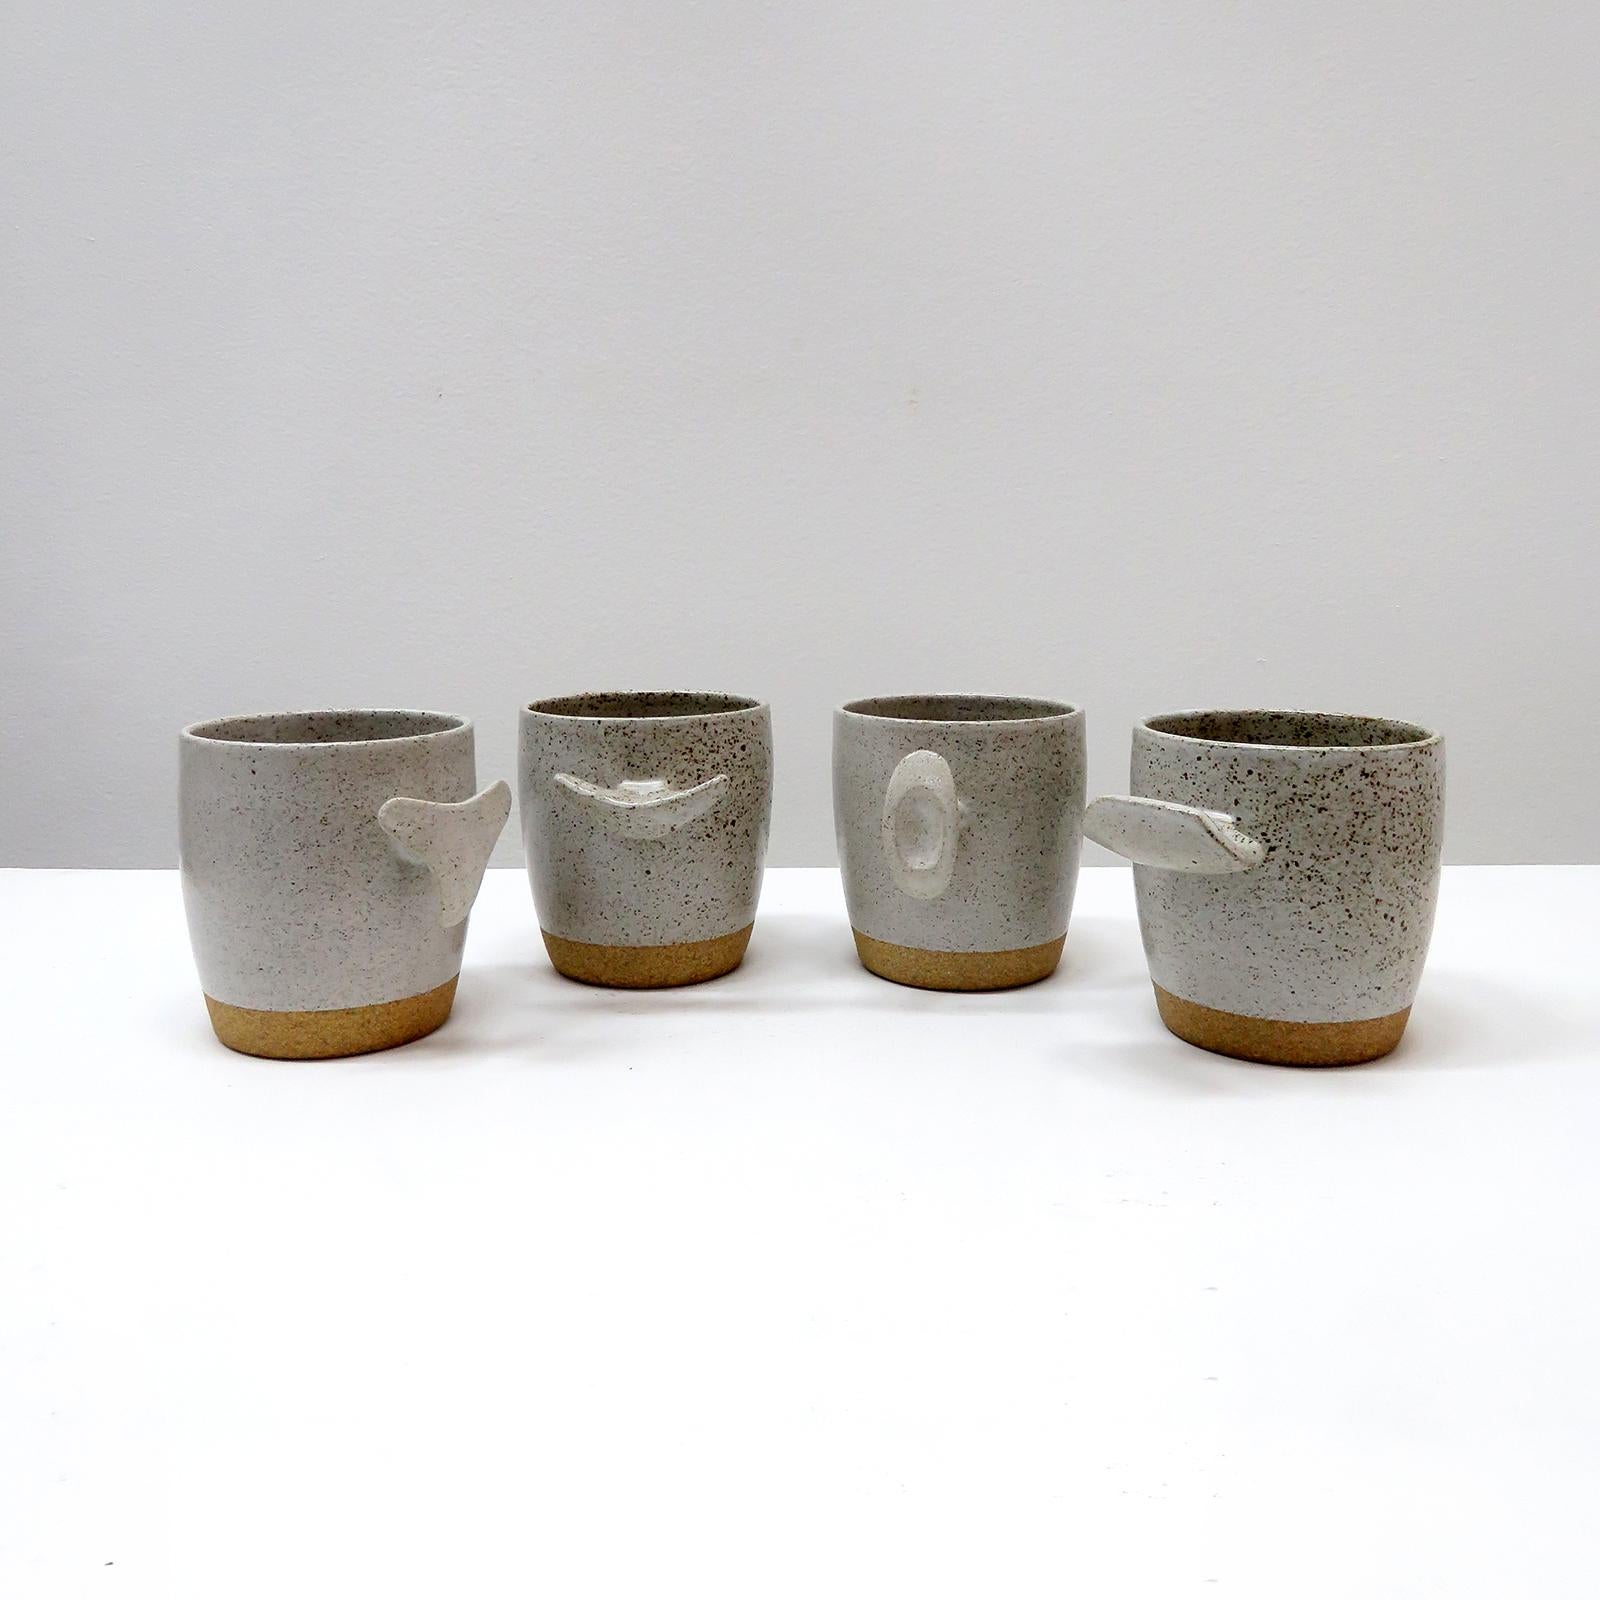 wunderbare 'Cope'-Tassen, handgefertigt vom Keramiker Jed Farlow aus Los Angeles für Farlow Design. Hochgebranntes Steingut mit mattweiß gesprenkelter Glasur. Diese einzigartigen Tassen wurden mit einem menschenzentrierten Ansatz entwickelt und